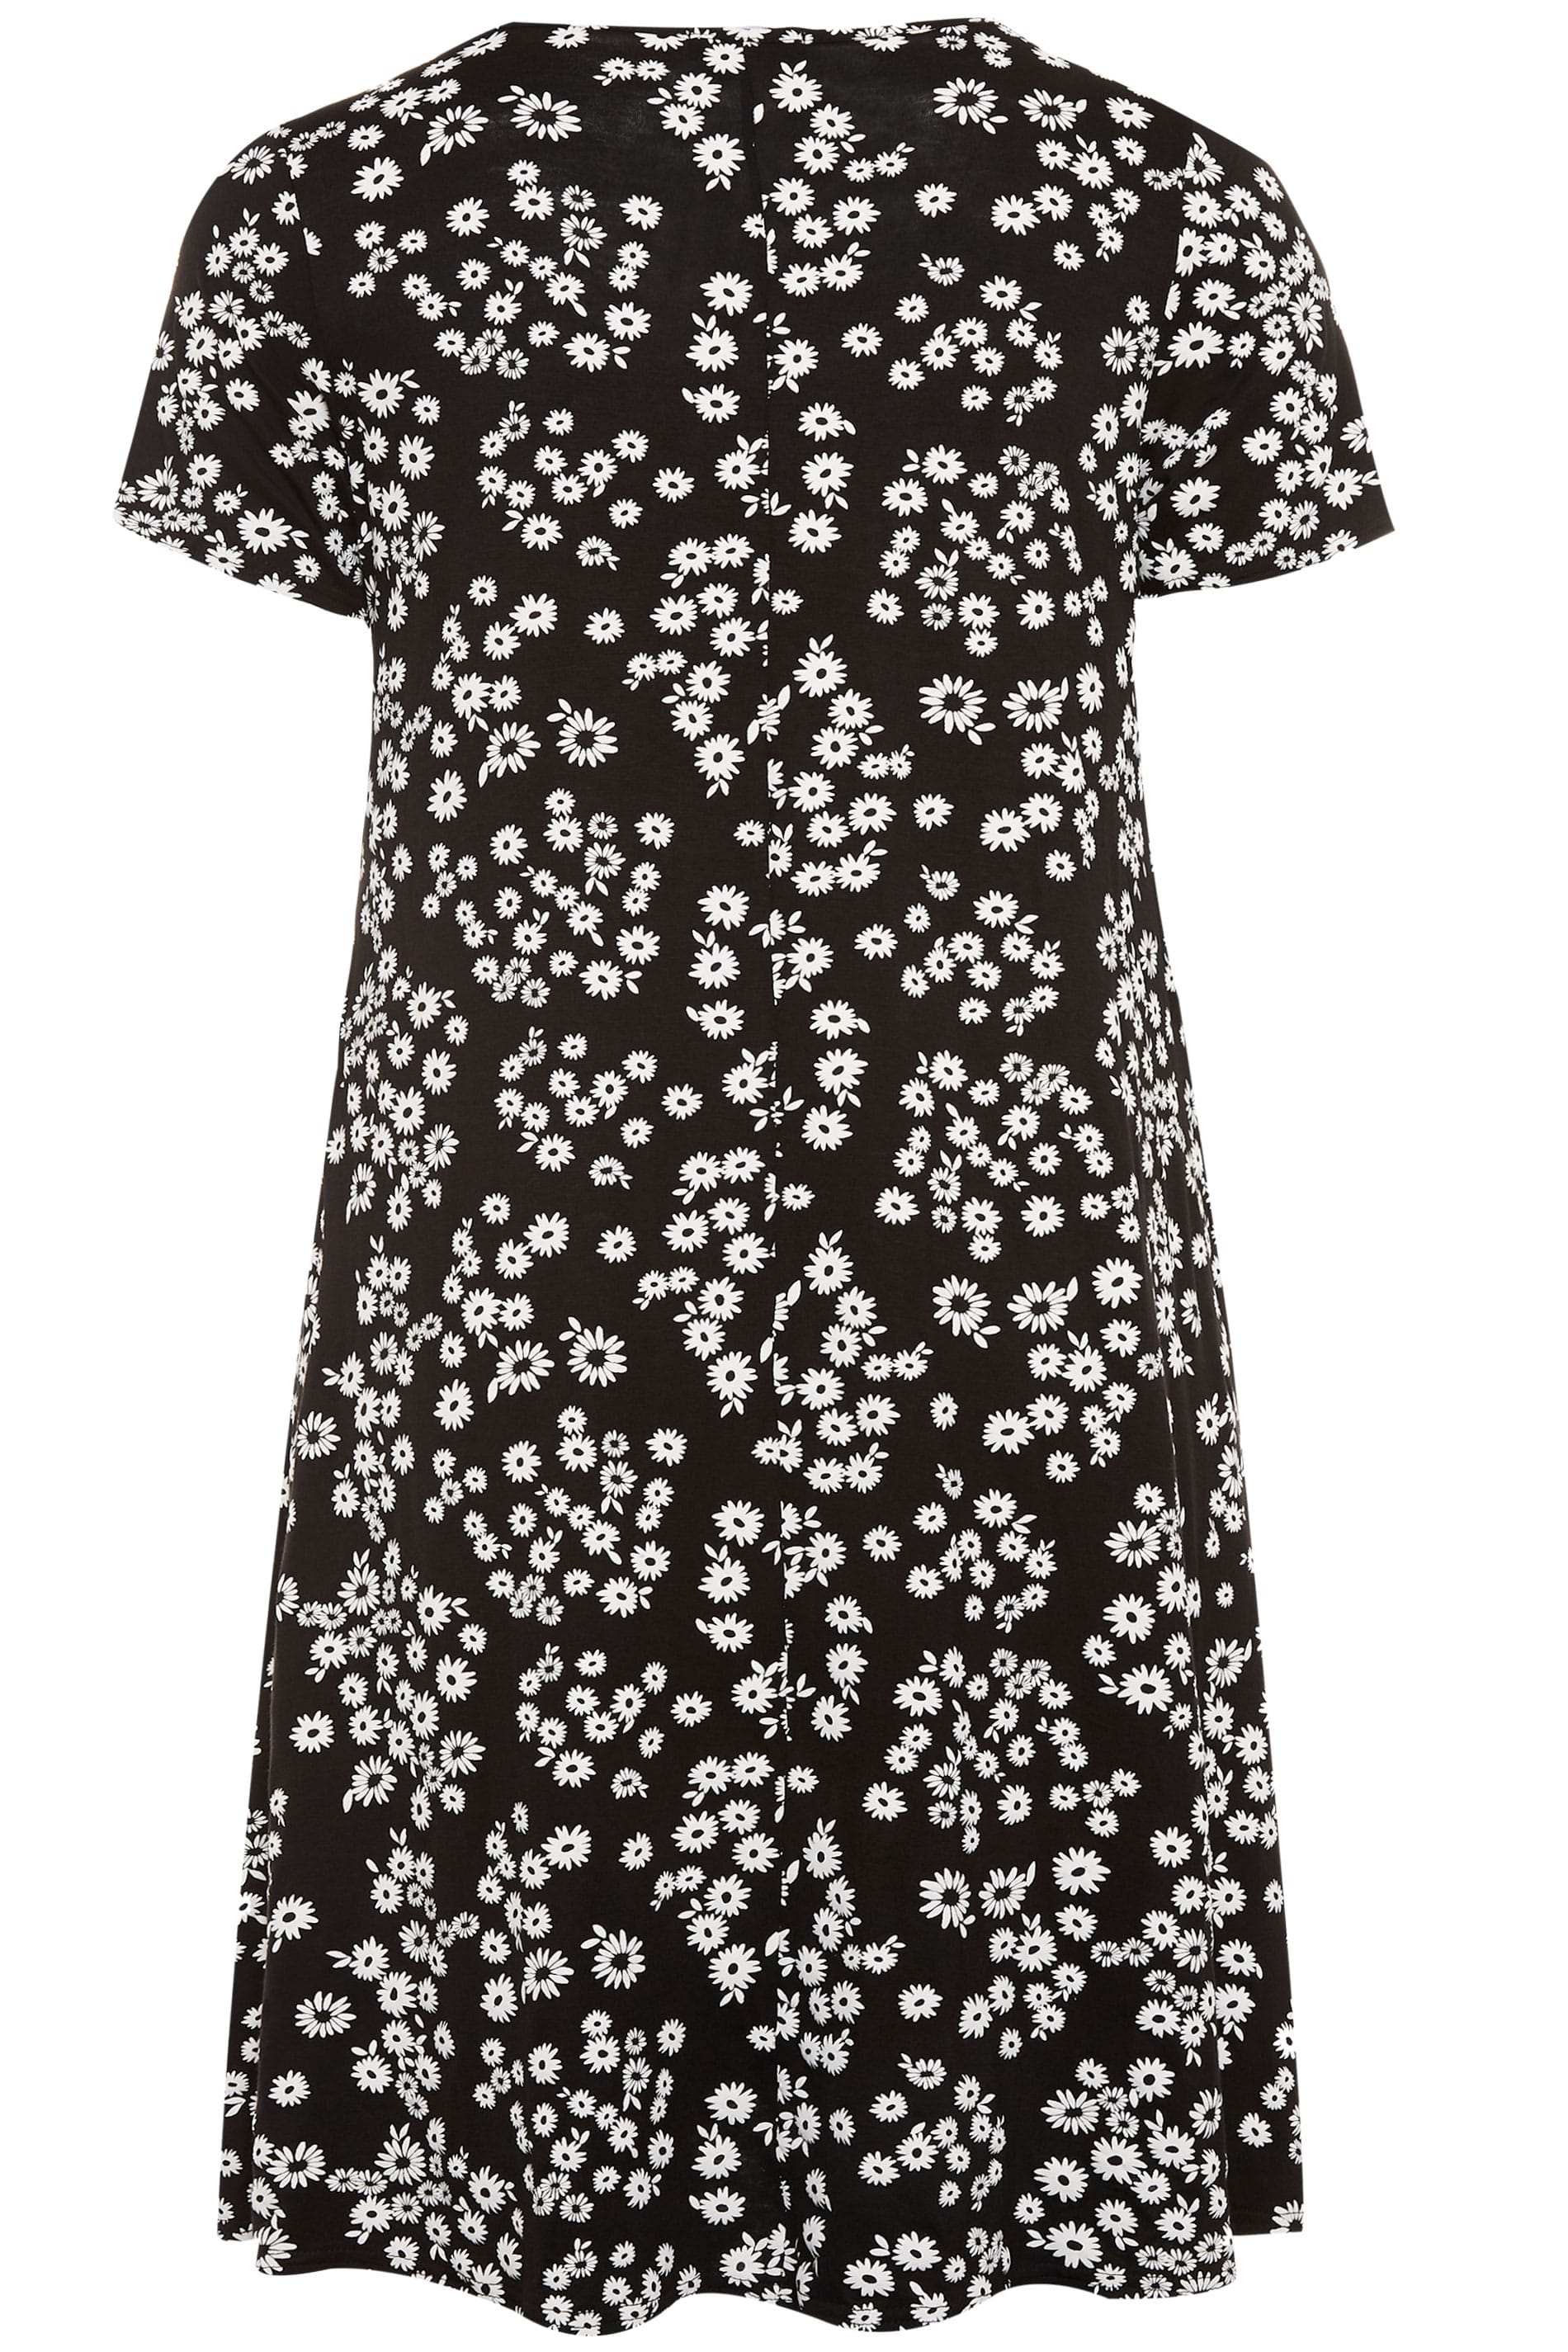 Black Daisy Drape Pocket Dress | Yours Clothing